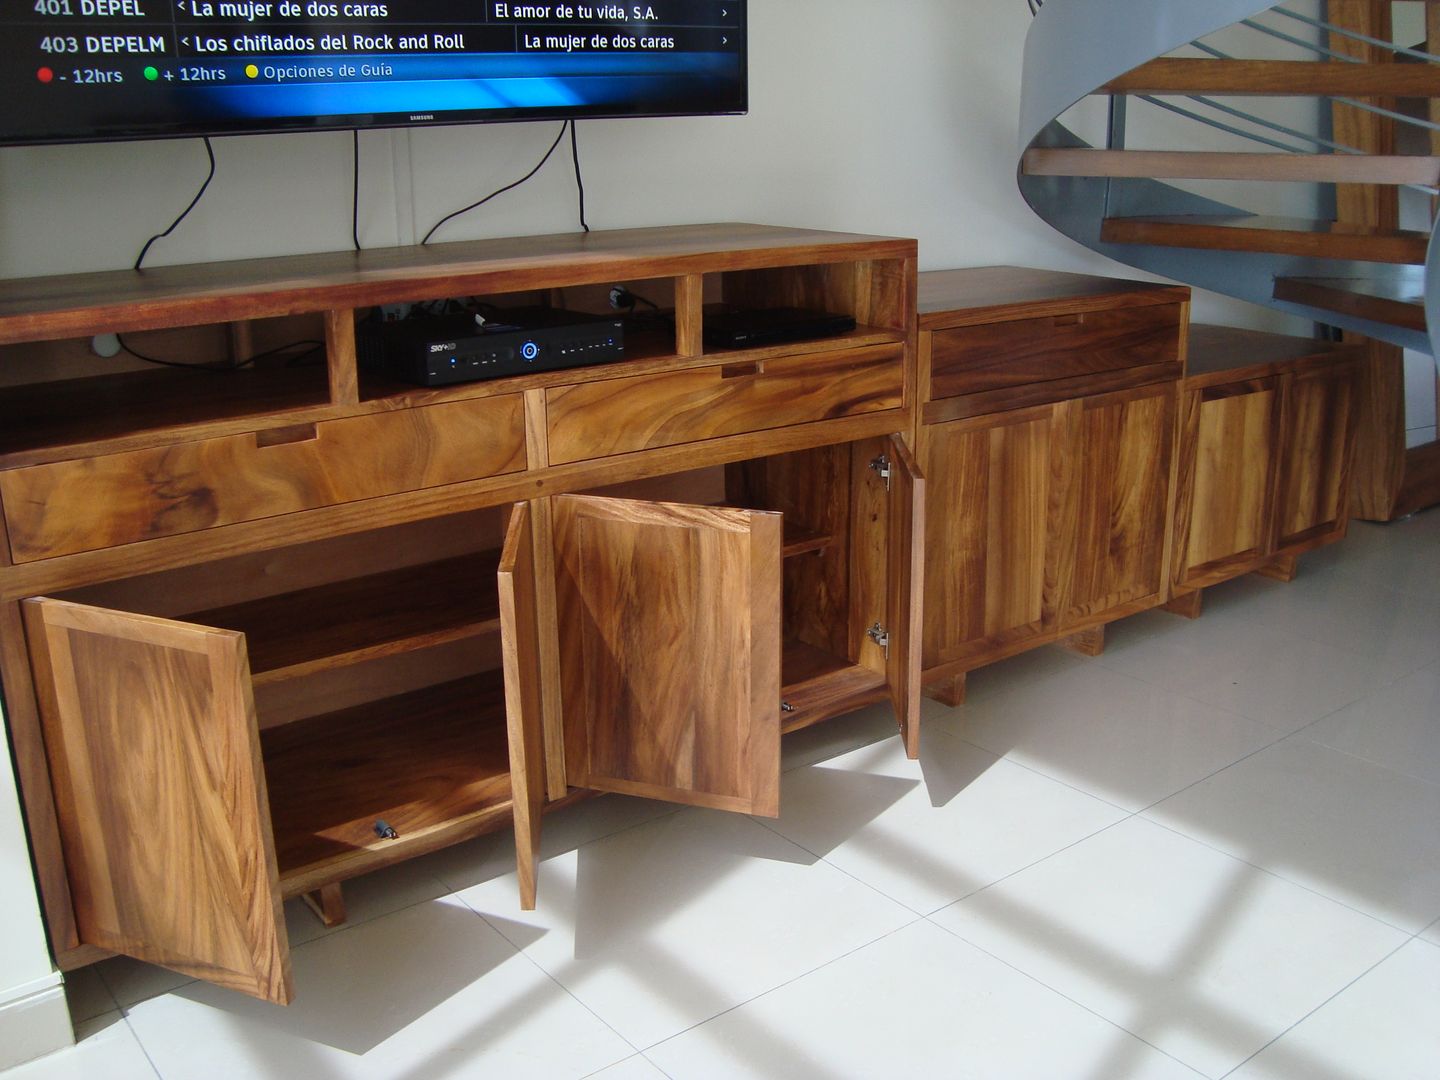 Consola para TV, FLO Arte y Diseño FLO Arte y Diseño Modern living room TV stands & cabinets